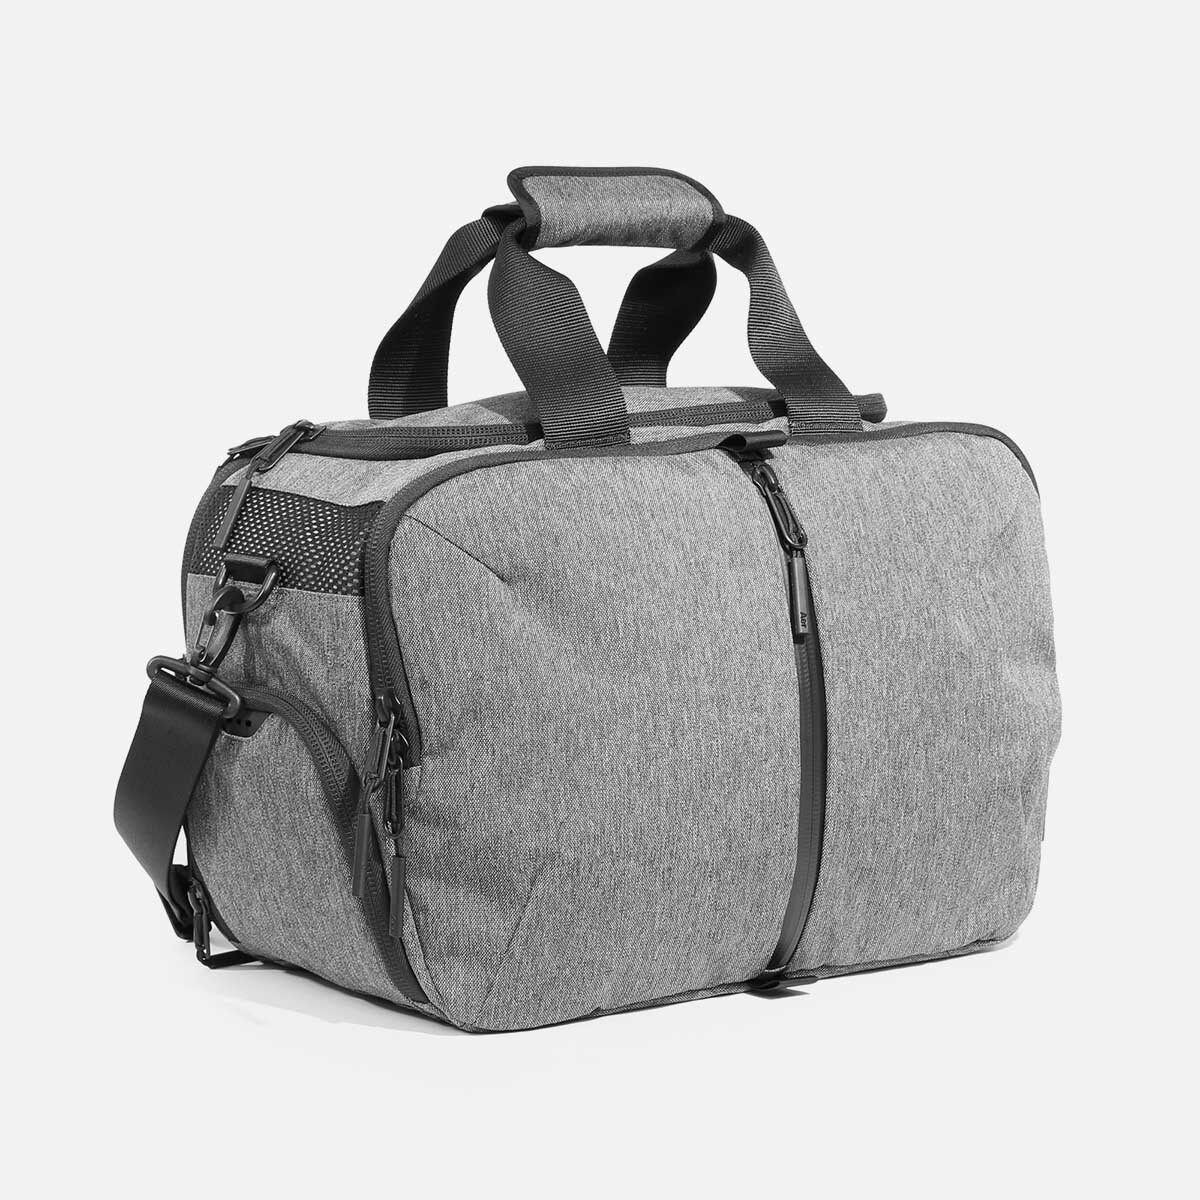 yin yang overnight bag faith plus yoga bag custom bag gym bag duffle bag Gray bag